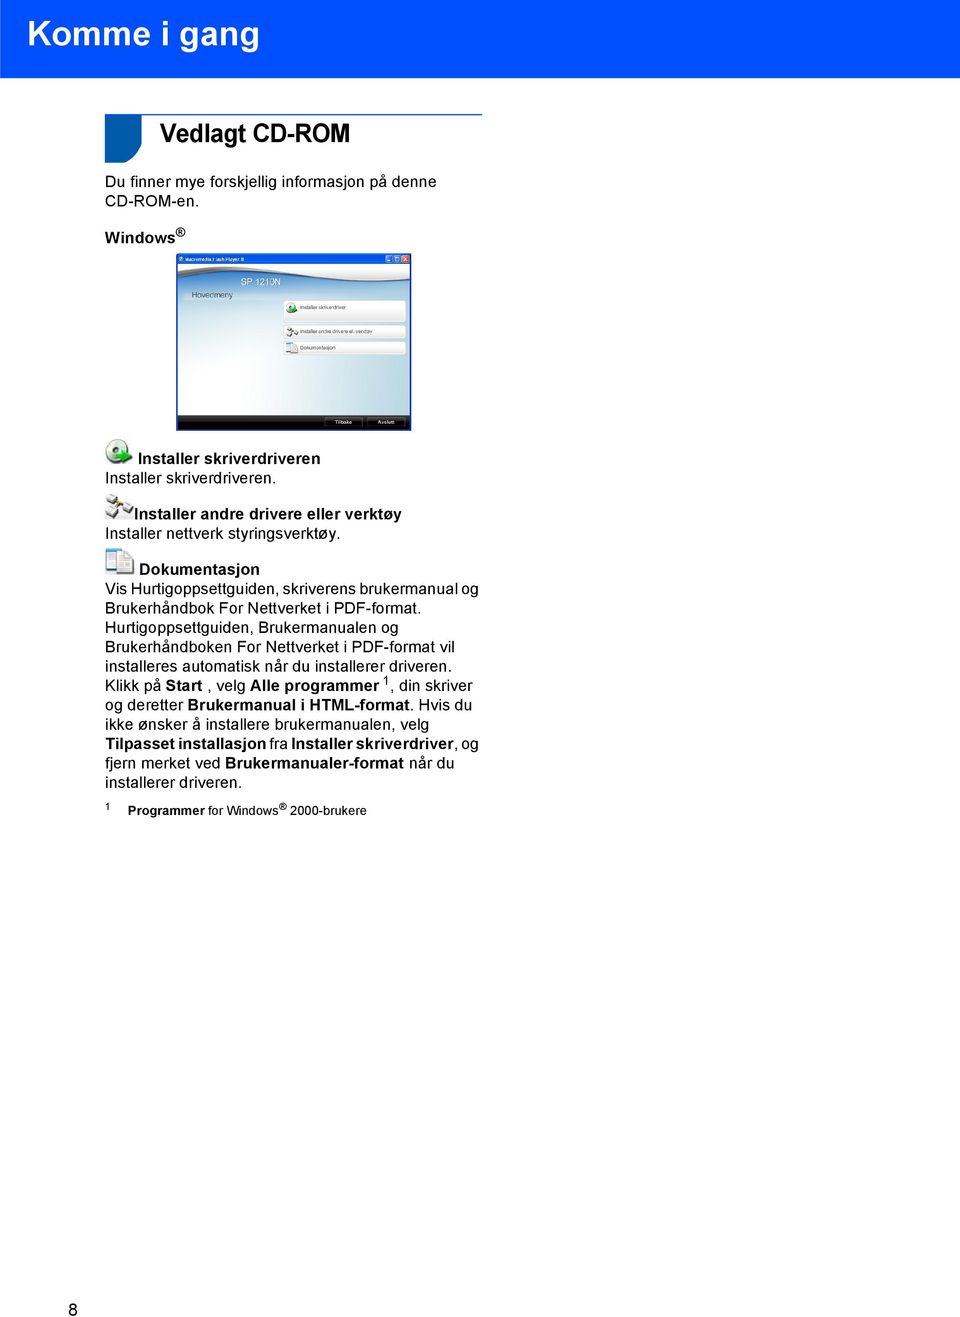 Hurtigoppsettguiden, Brukermanualen og Brukerhåndboken For Nettverket i PDF-format vil installeres automatisk når du installerer driveren.